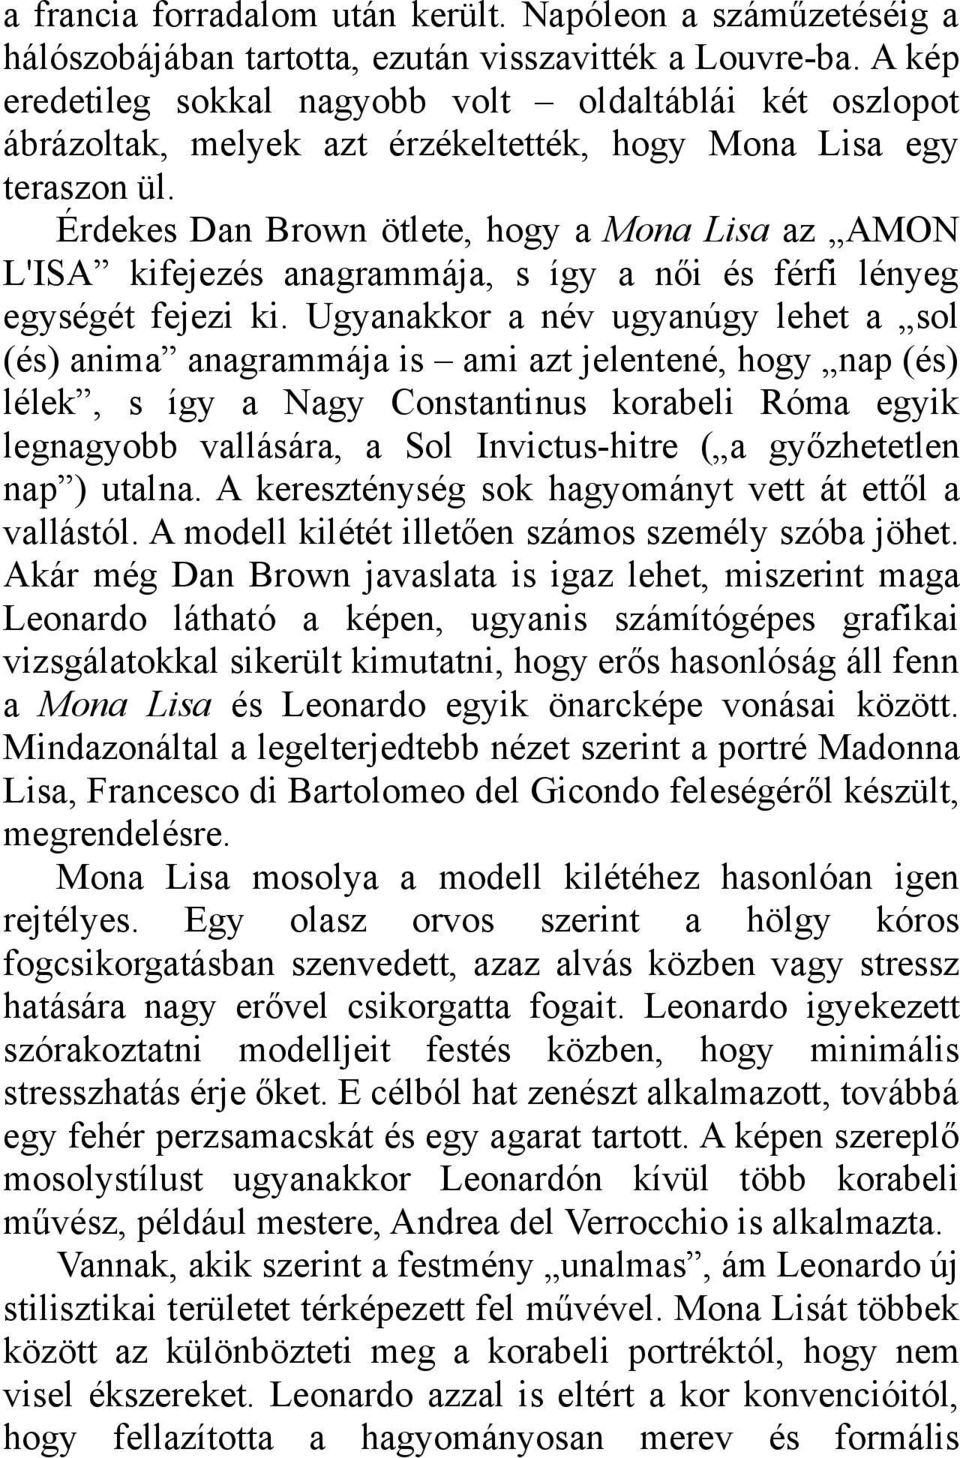 Érdekes Dan Brown ötlete, hogy a Mona Lisa az AMON L'ISA kifejezés anagrammája, s így a női és férfi lényeg egységét fejezi ki.